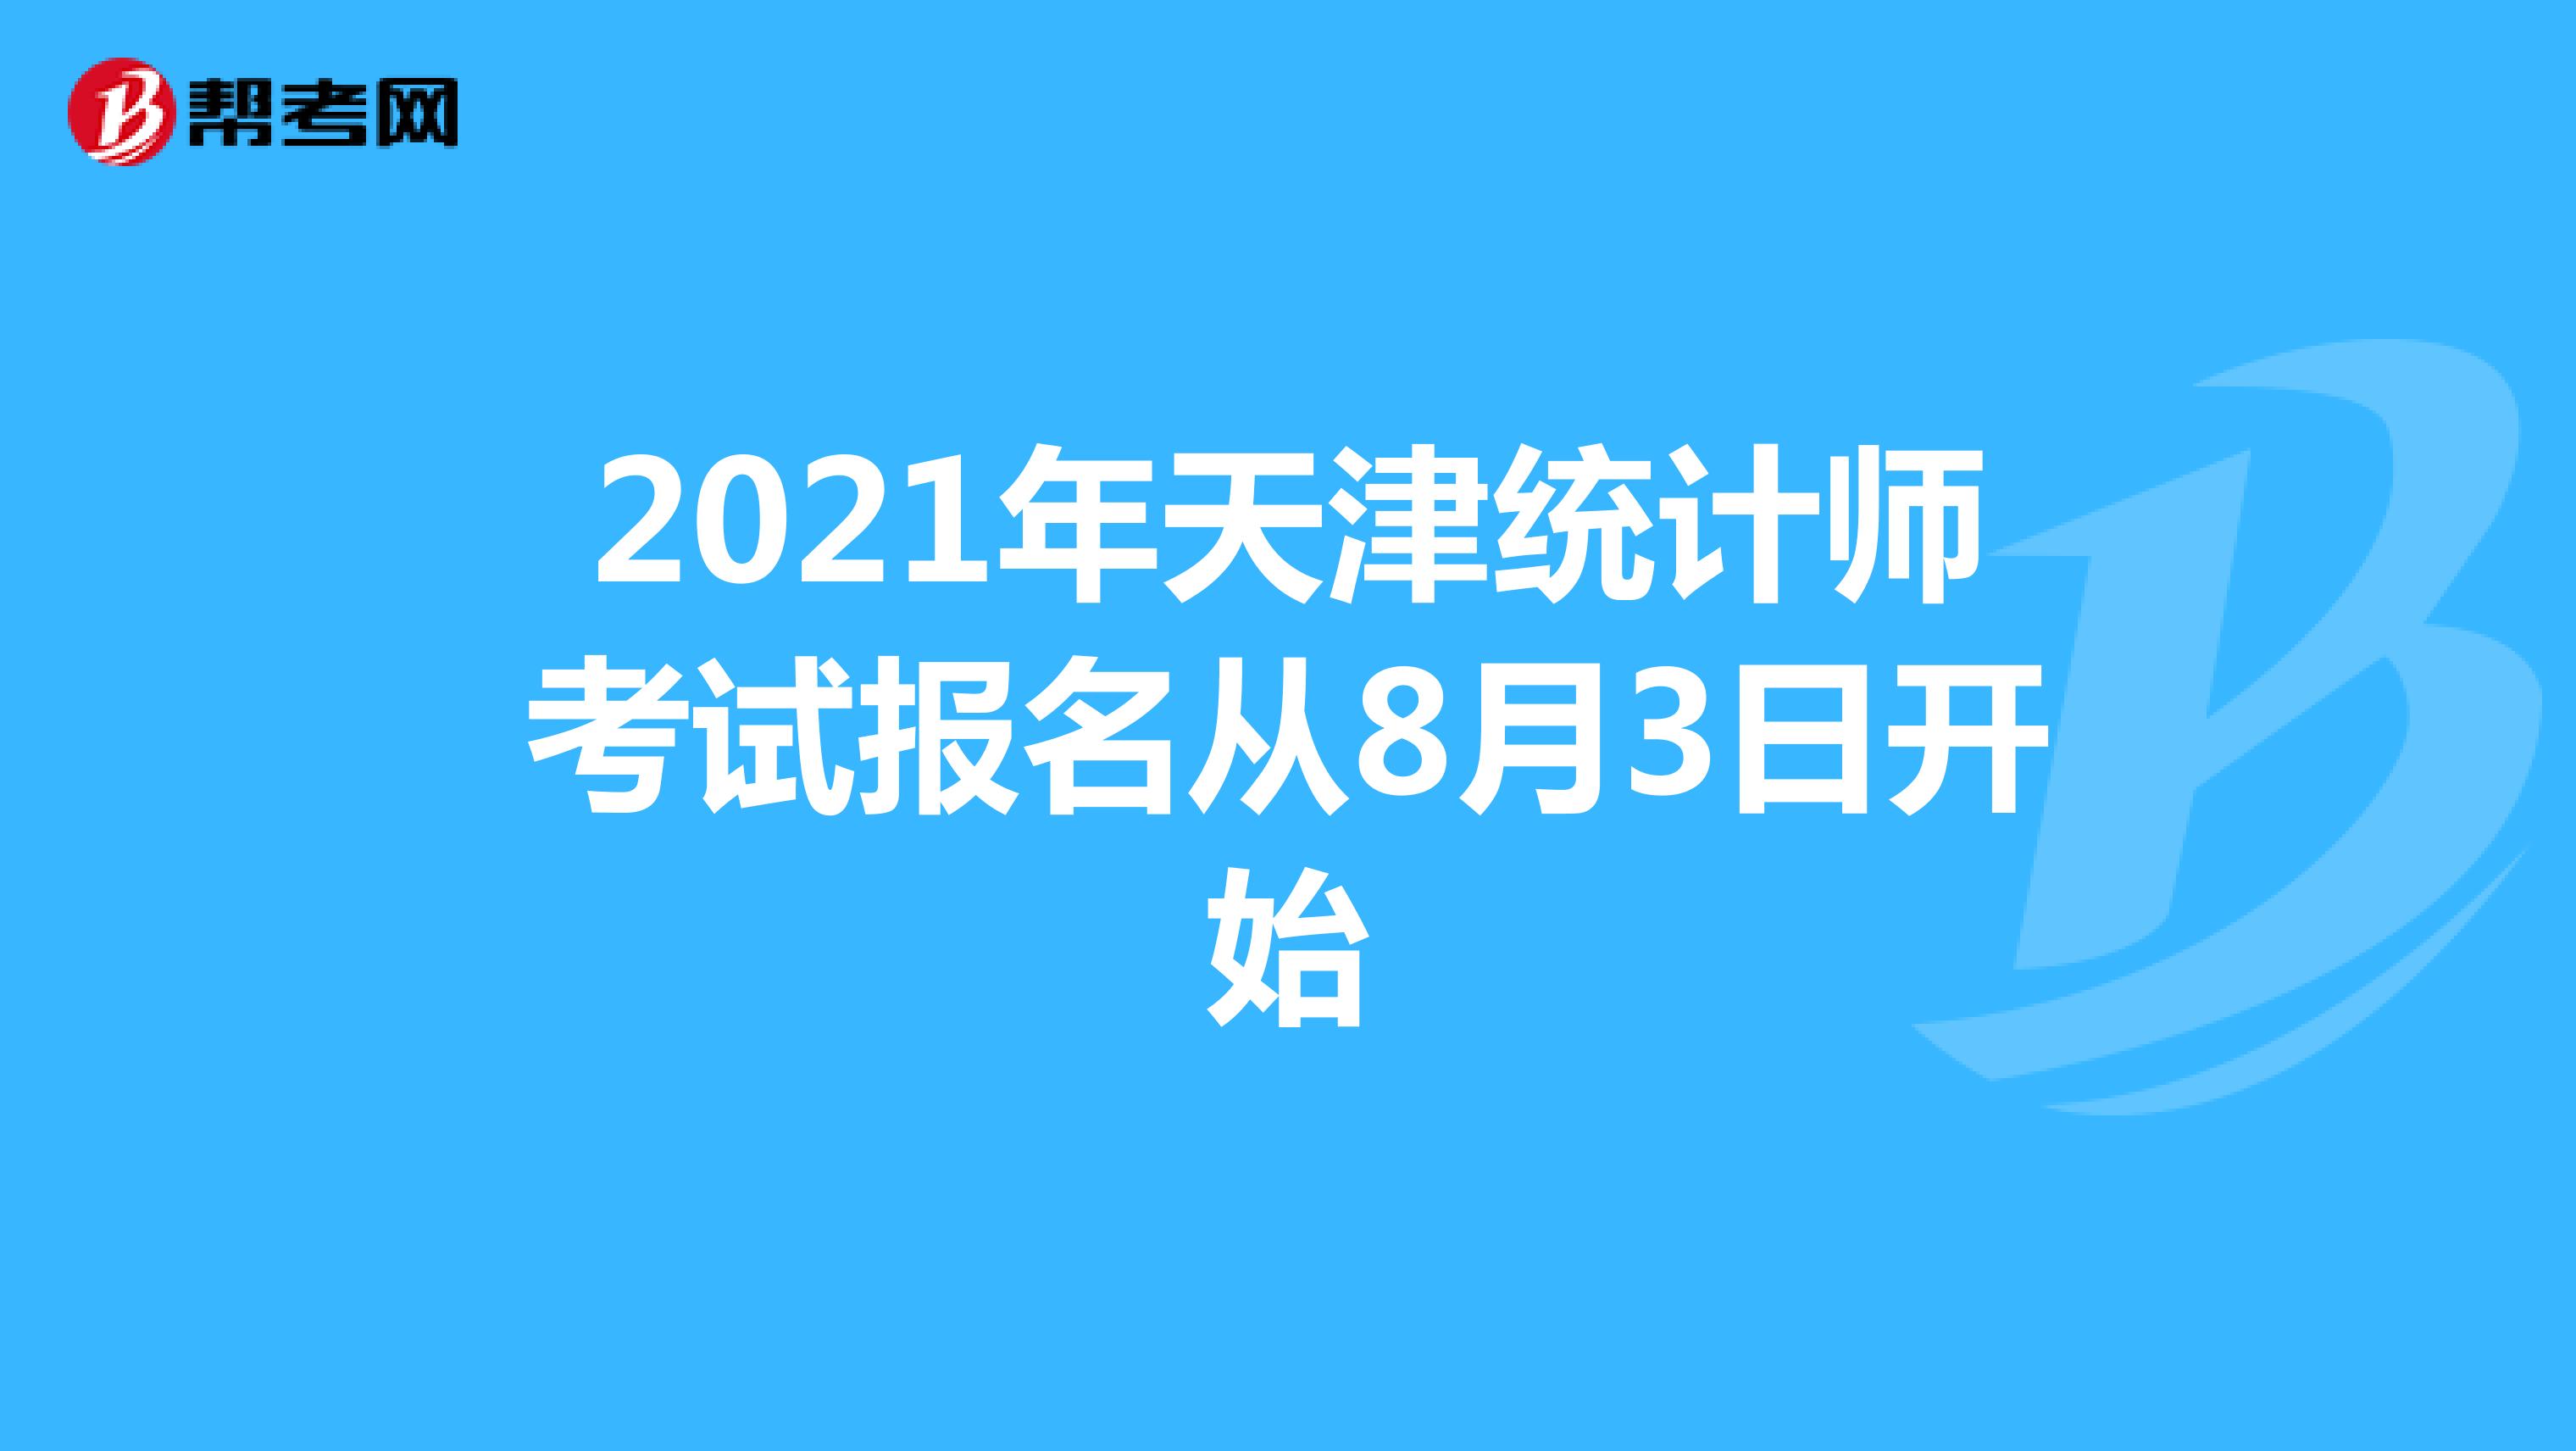 2021年天津统计师考试报名从8月3日开始